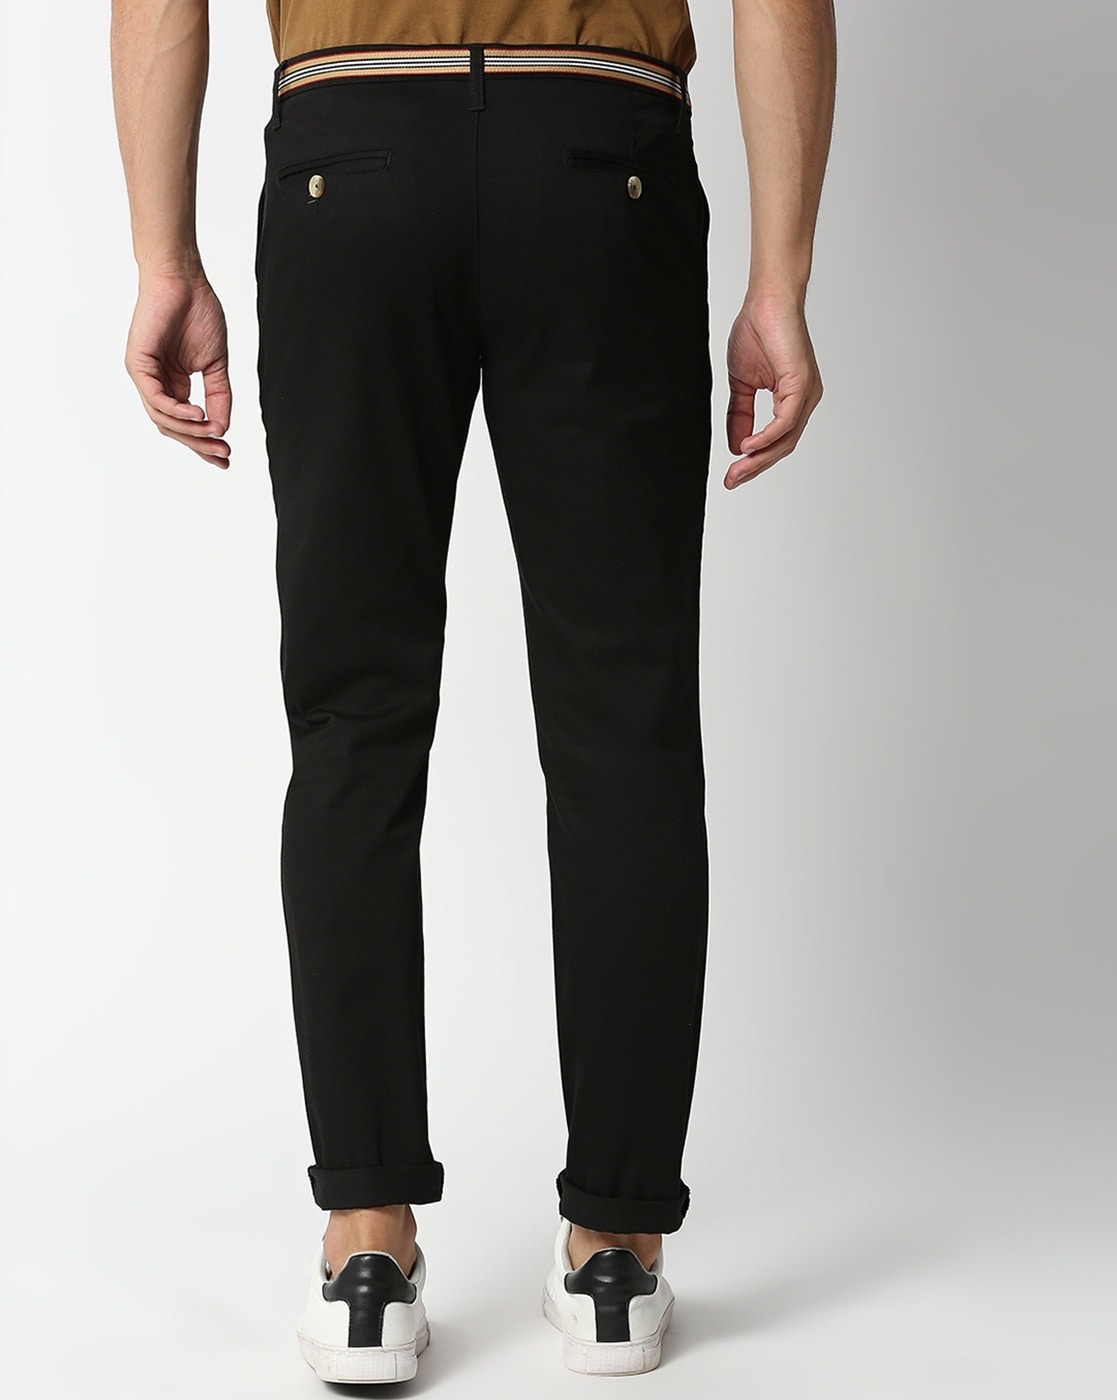 Nike DF UV Chino Slim Pants - Black | Drummond Golf